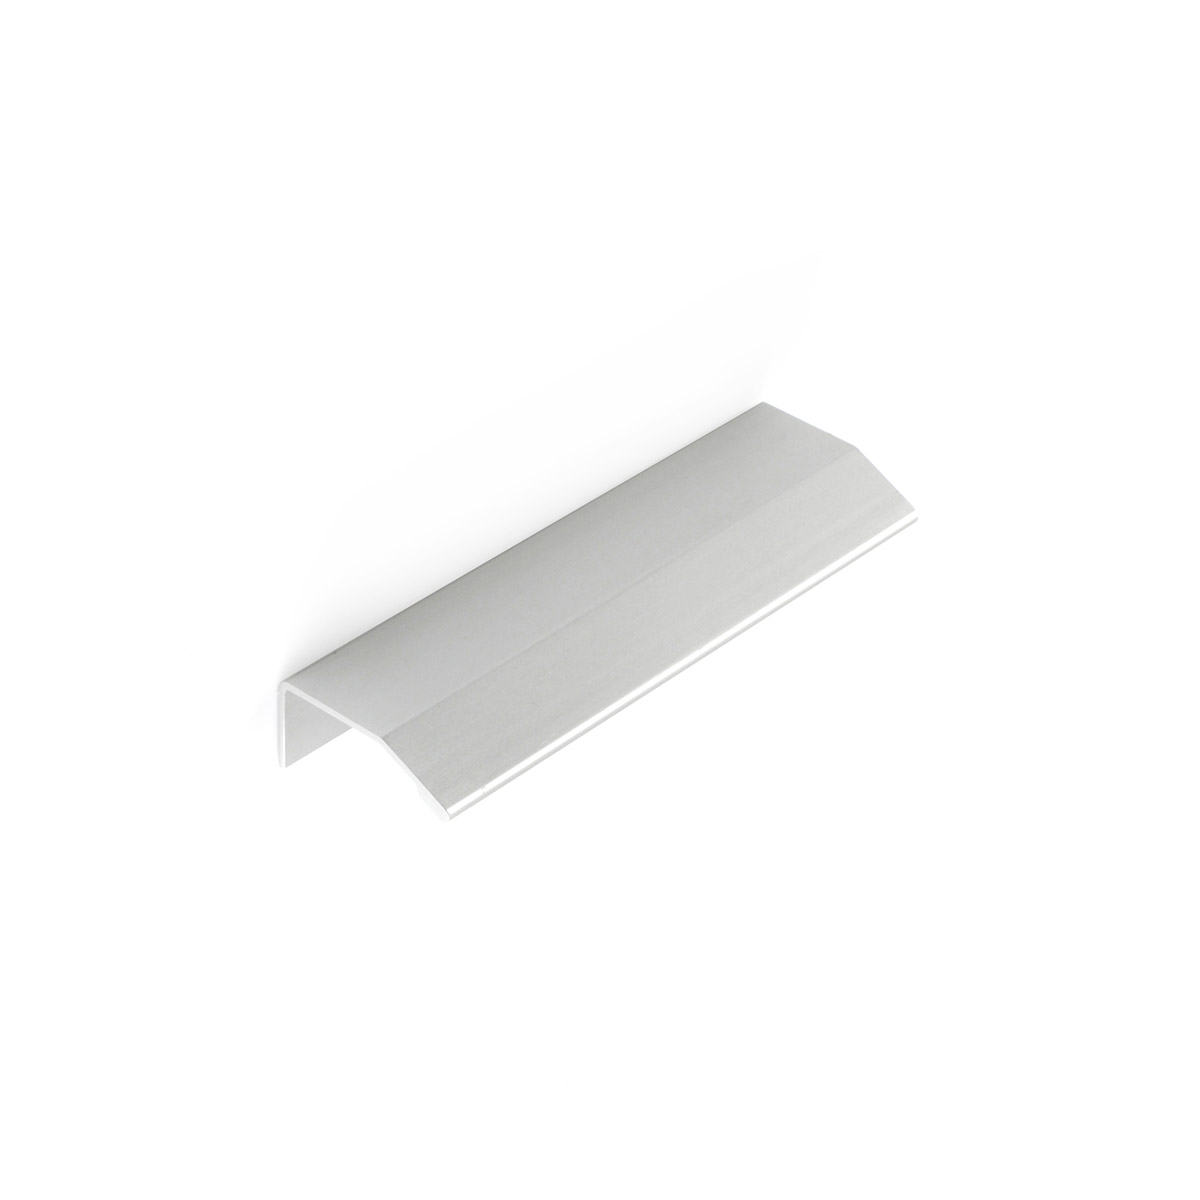 Asa de aluminio con acabado anodizado mate, dimensiones:120x18x39mm y entrepuntos:96mm